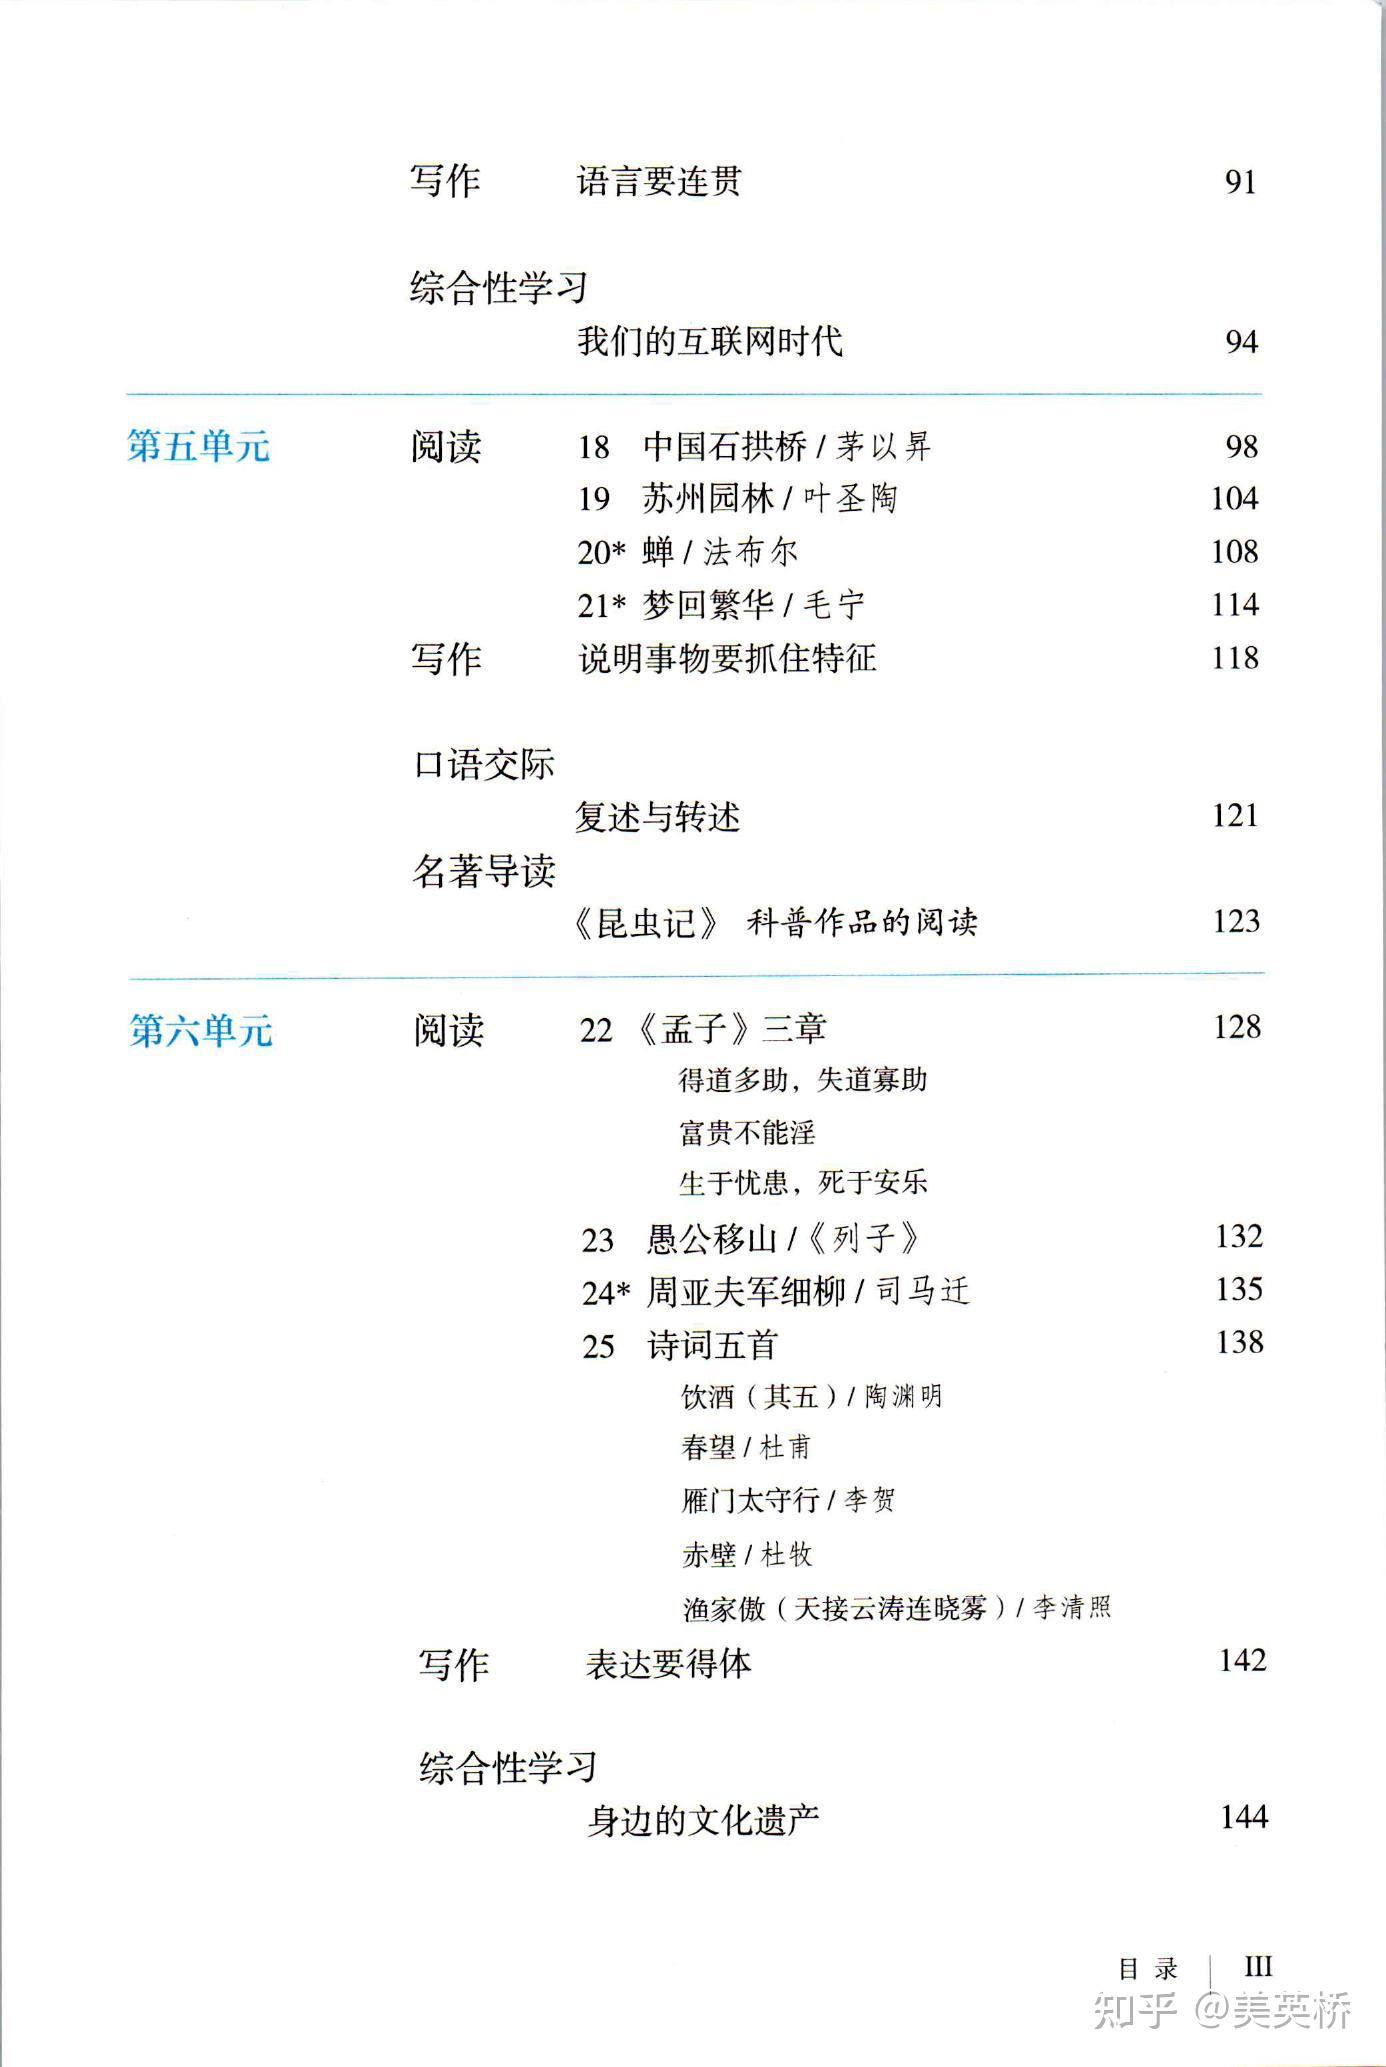 2021年初中语文八年级上册(五四学制)课本教材及相关资源介绍 